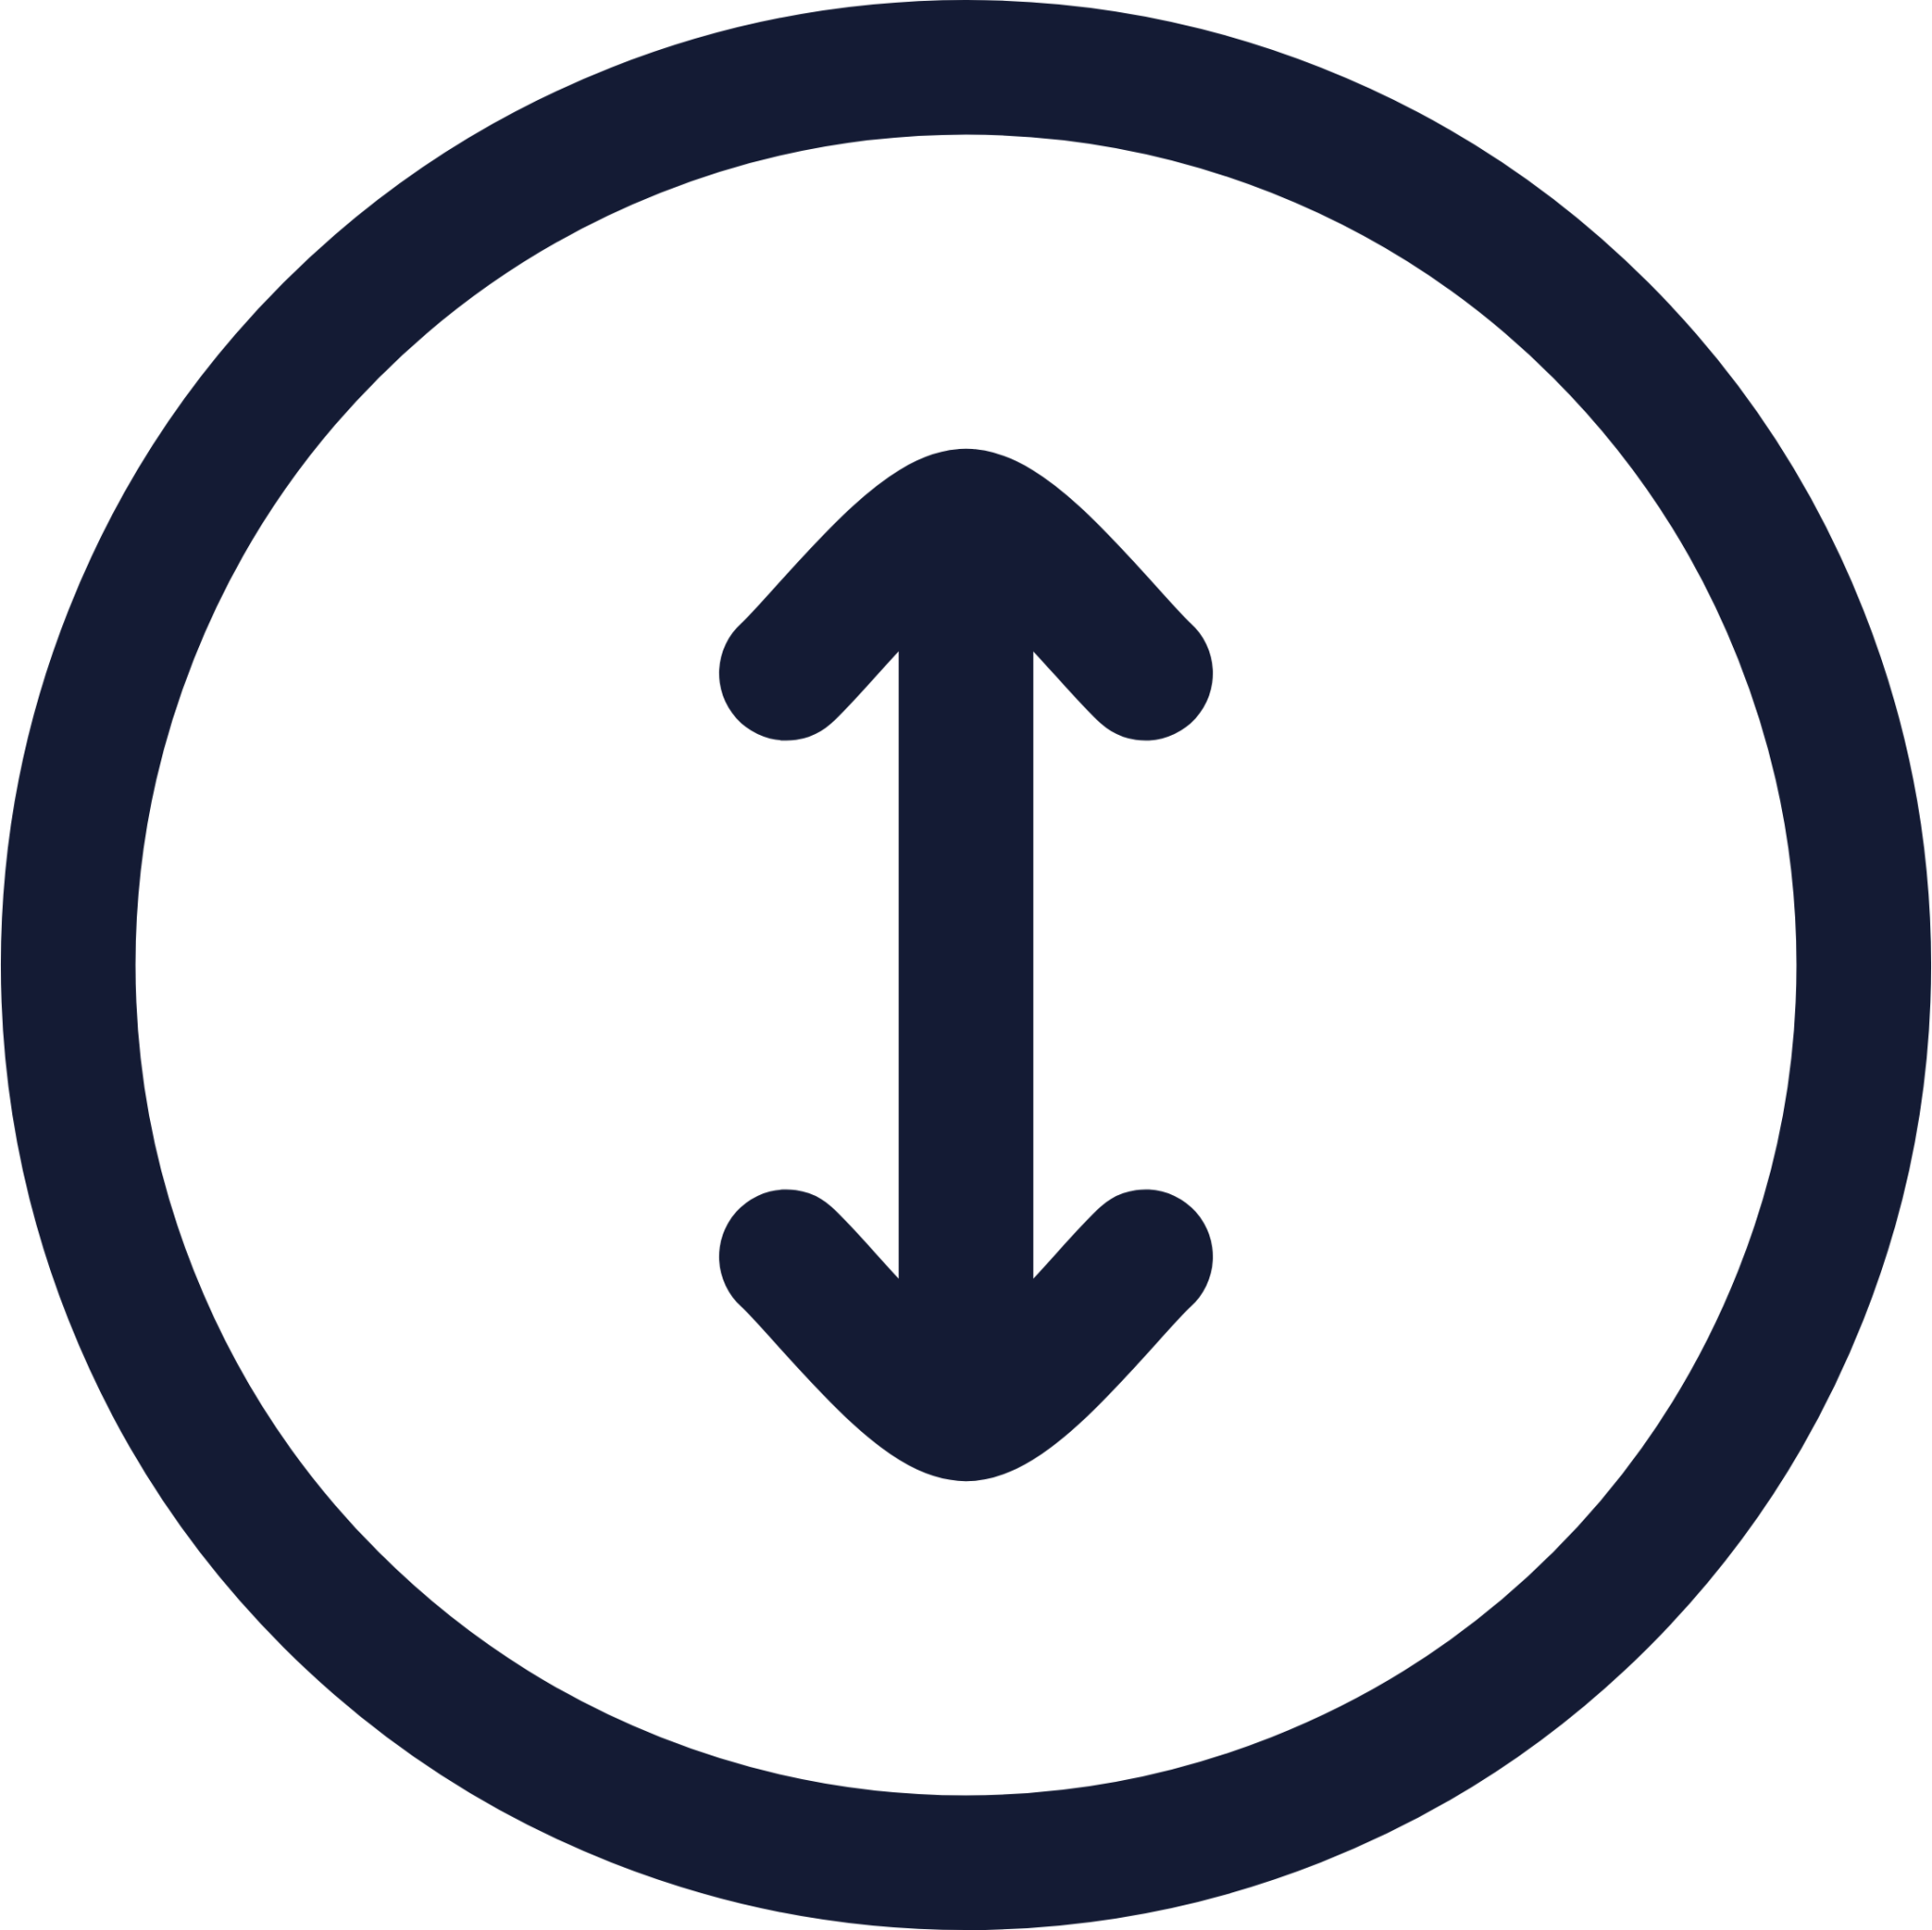 circle arrow vertical icon